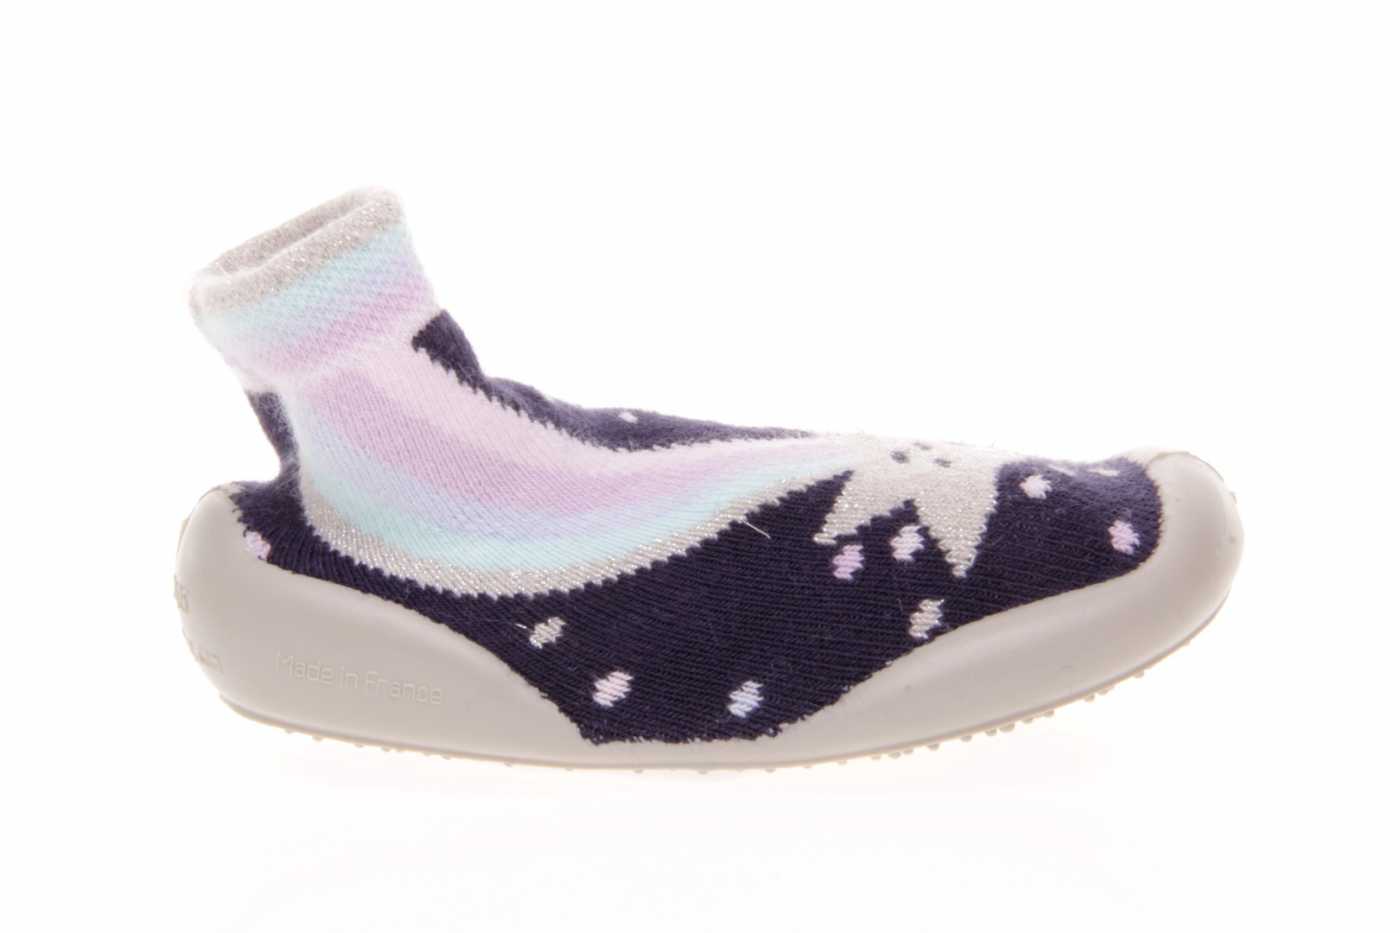 patrocinado Viva alias Comprar zapato COLLEGIEN para INFANTIL NIÑO estilo CALCETINES color AZUL  MARINO TEXTIL